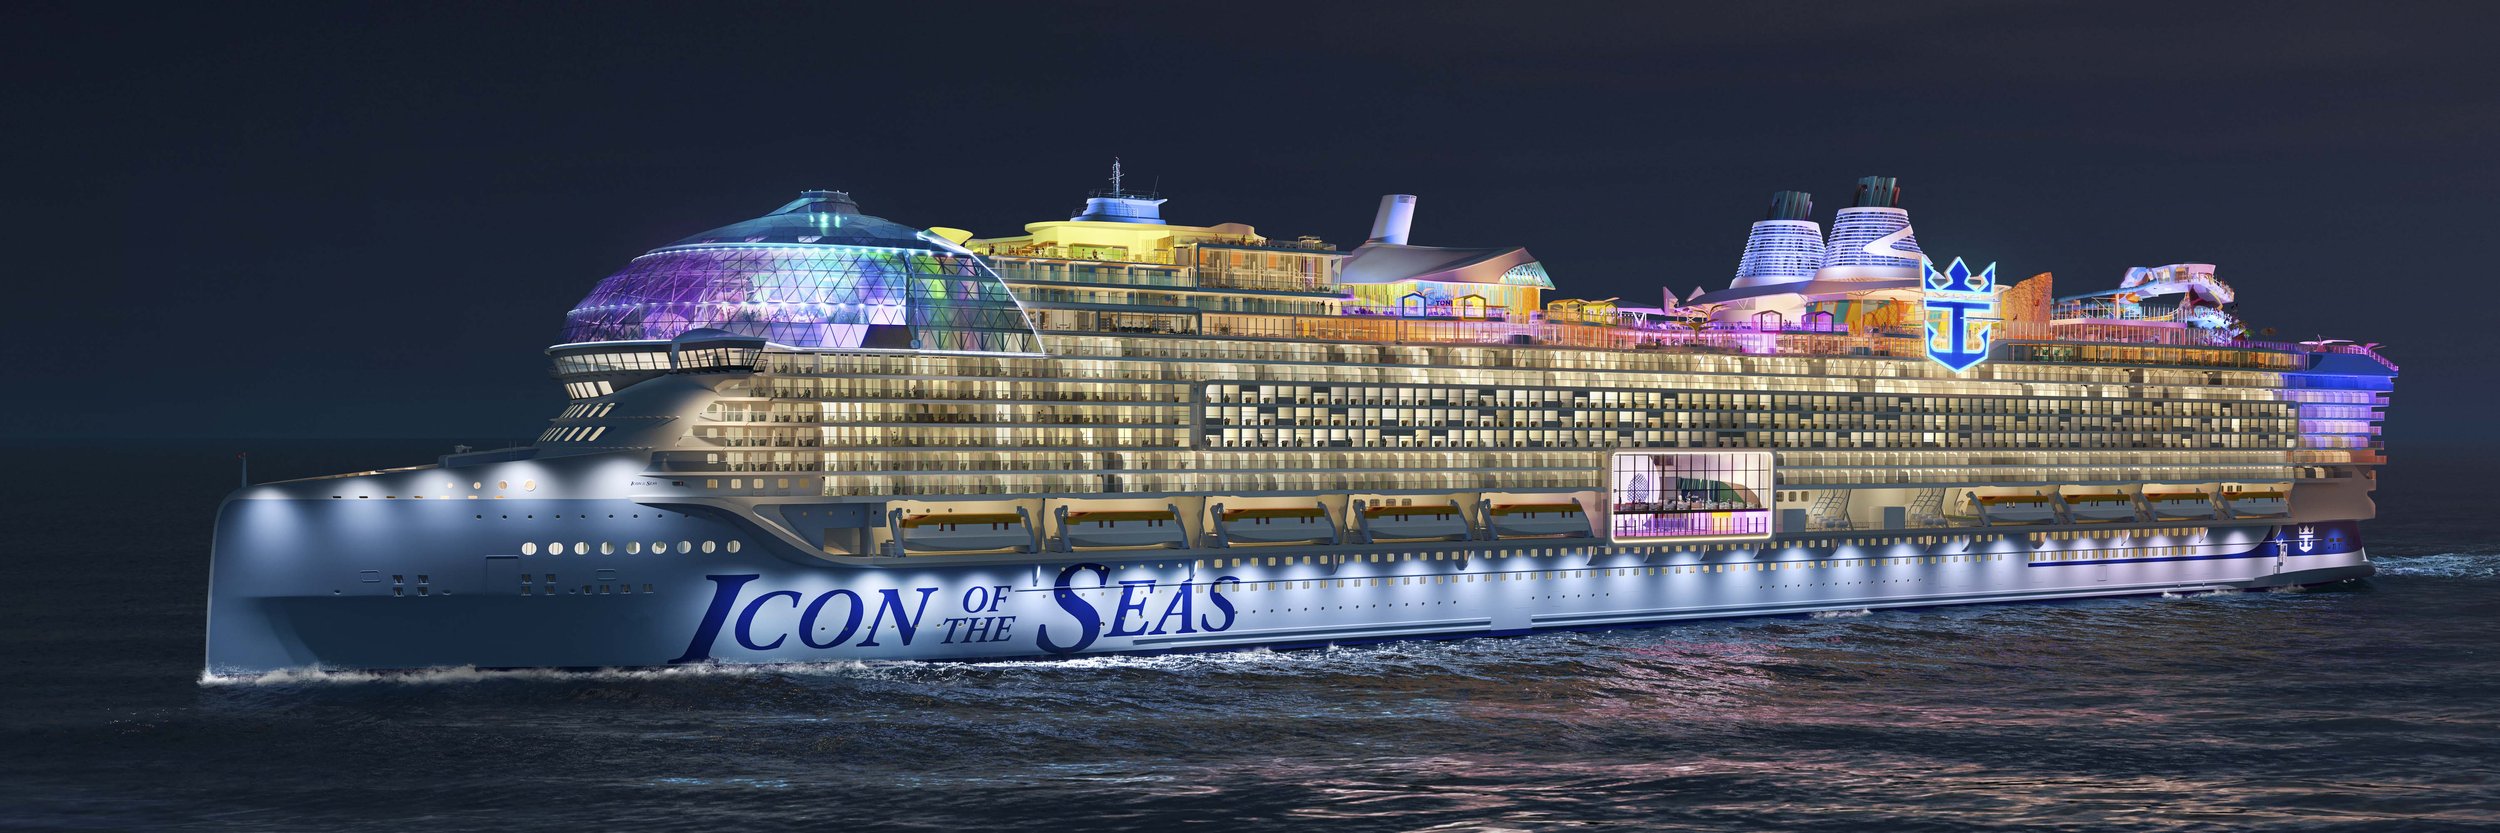 Путевки январь 2024. Самый большой круизный лайнер в мире 2023. Круизный лайнер icon of the Seas. Самый большой круизный лайнер в мире 2022. Royal Caribbean International корабли.